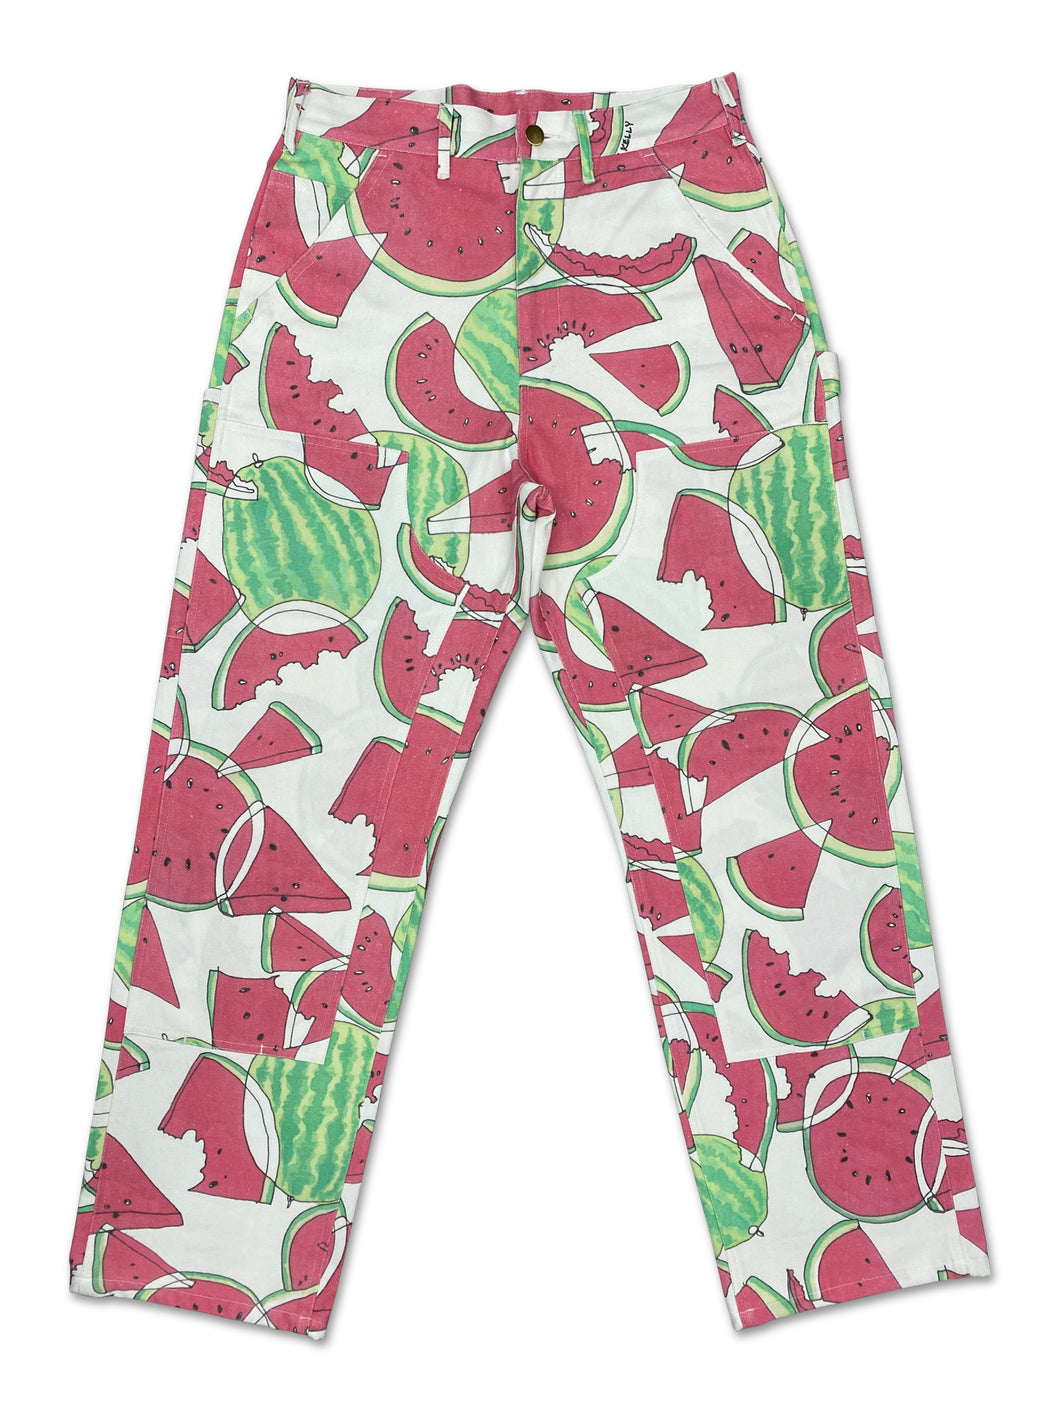 Watermelon Knee Work Pants